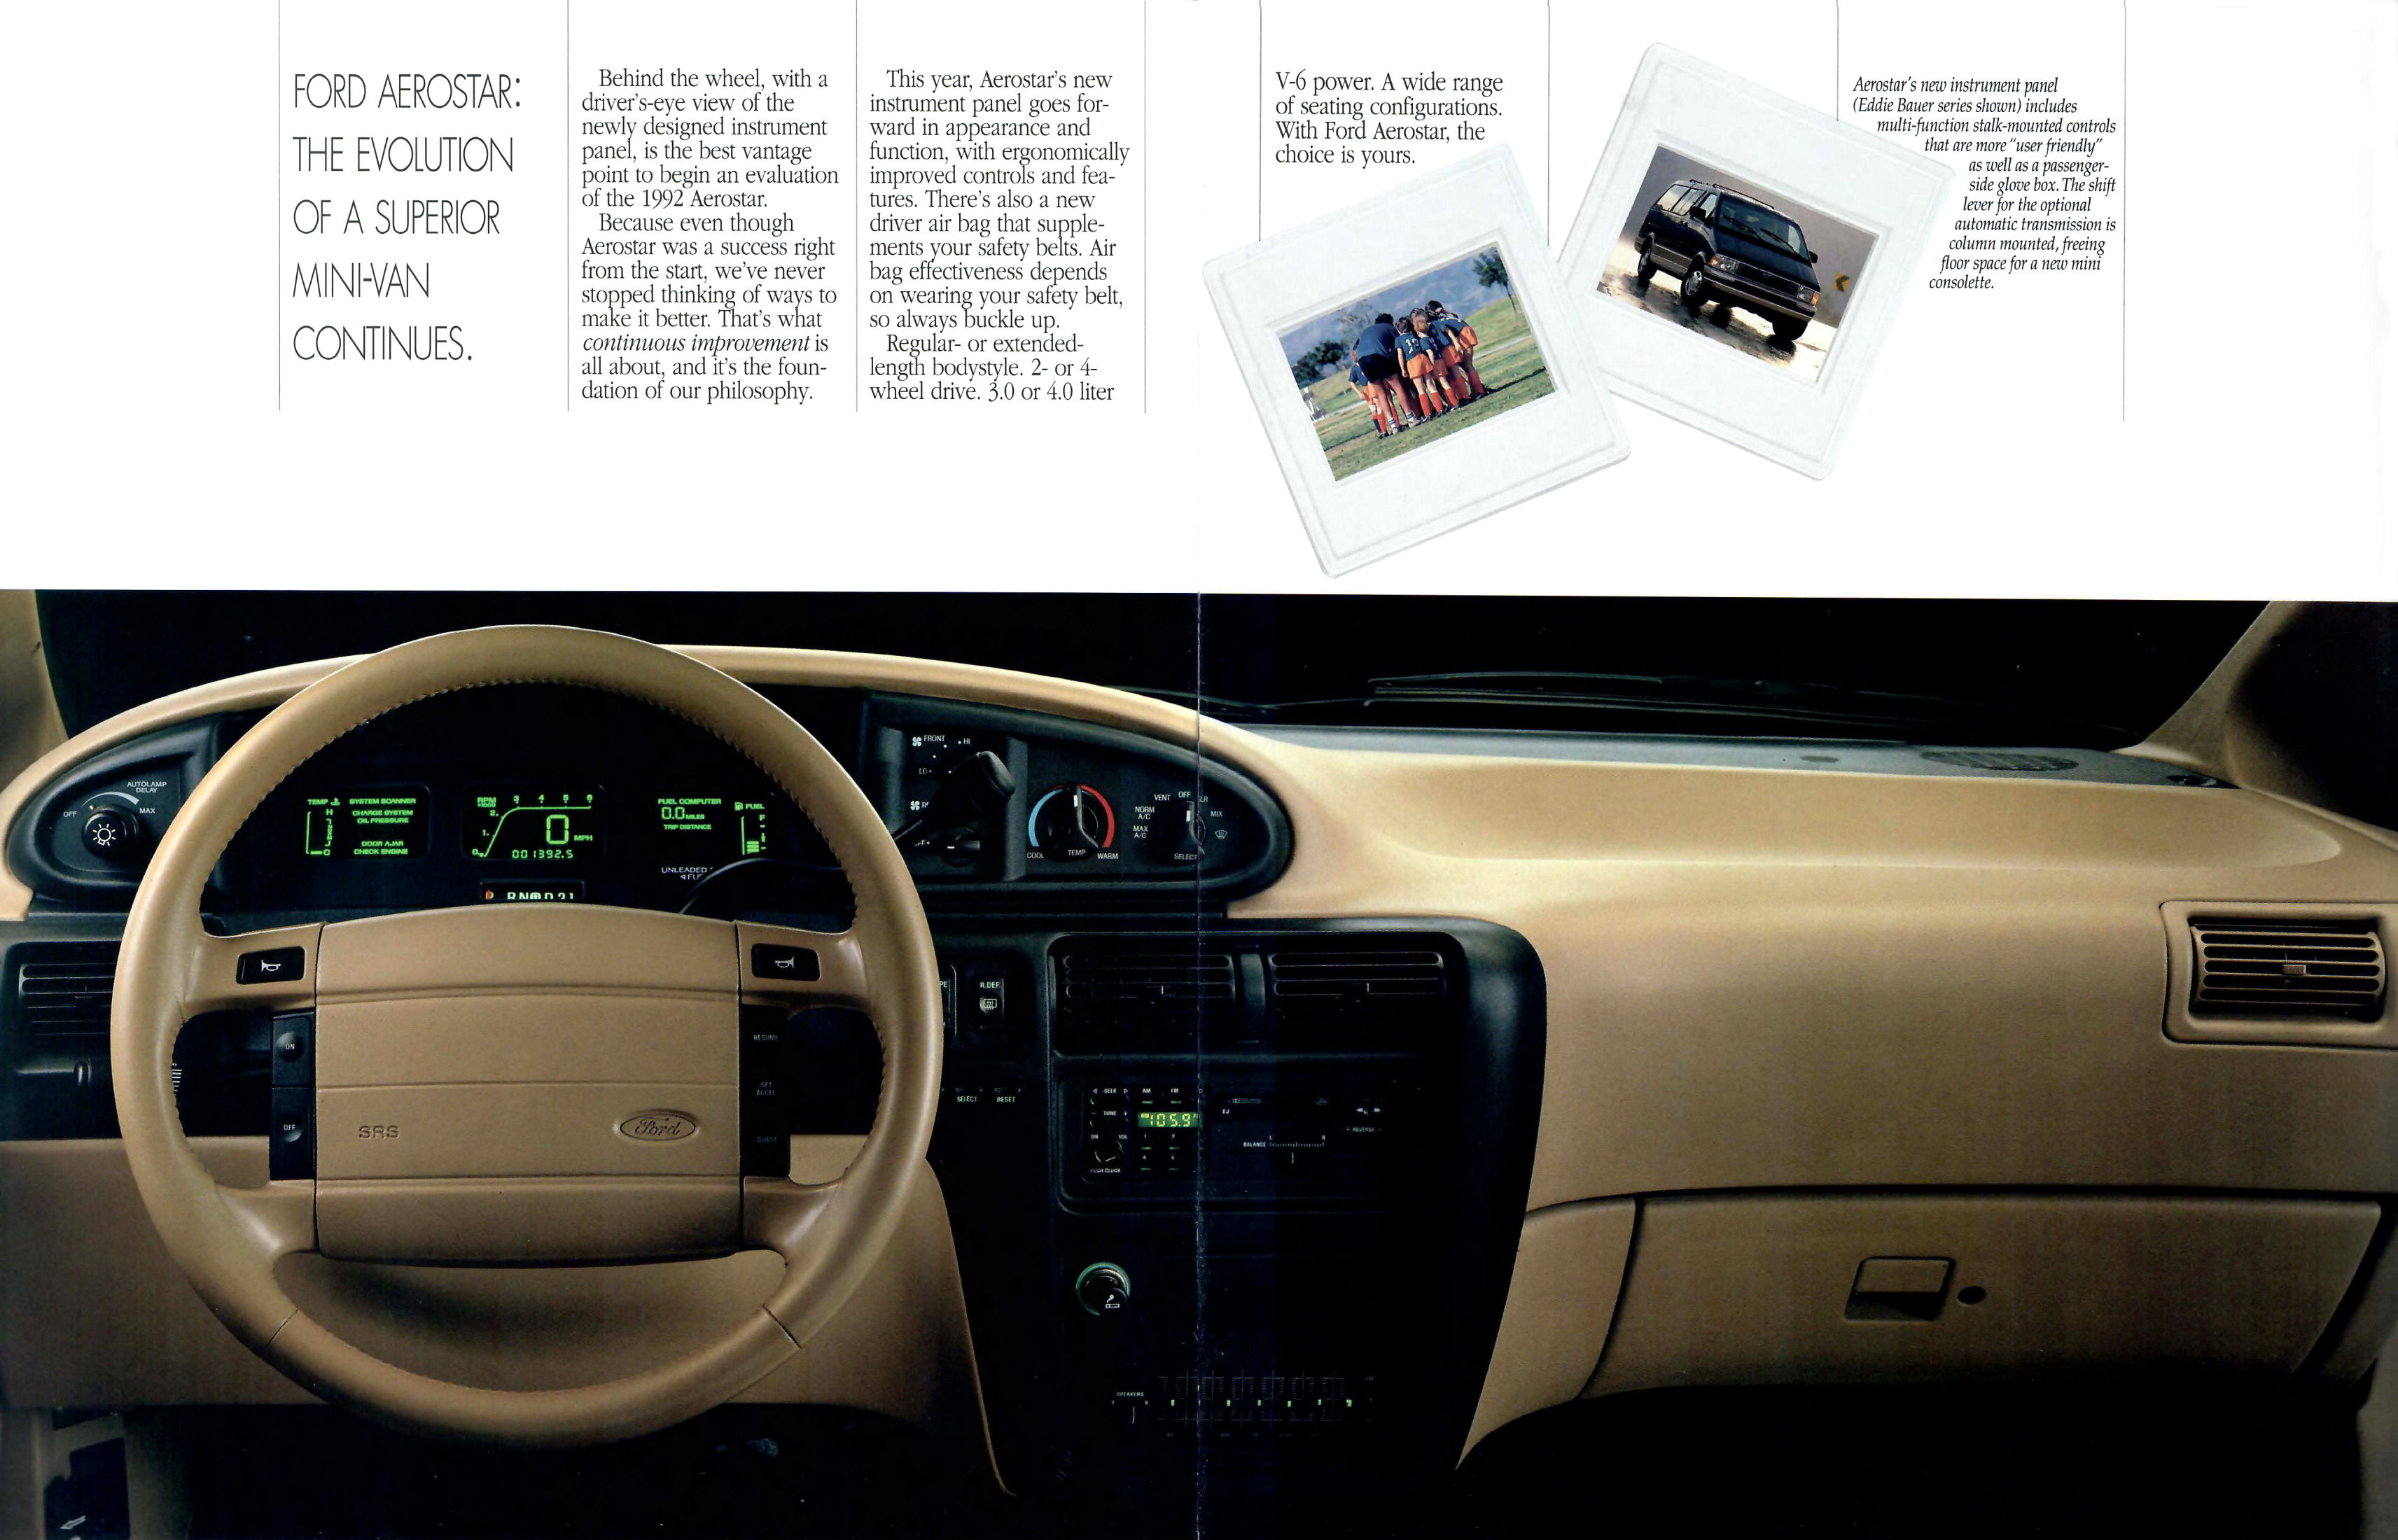 1992 Ford Aerostar-02-03